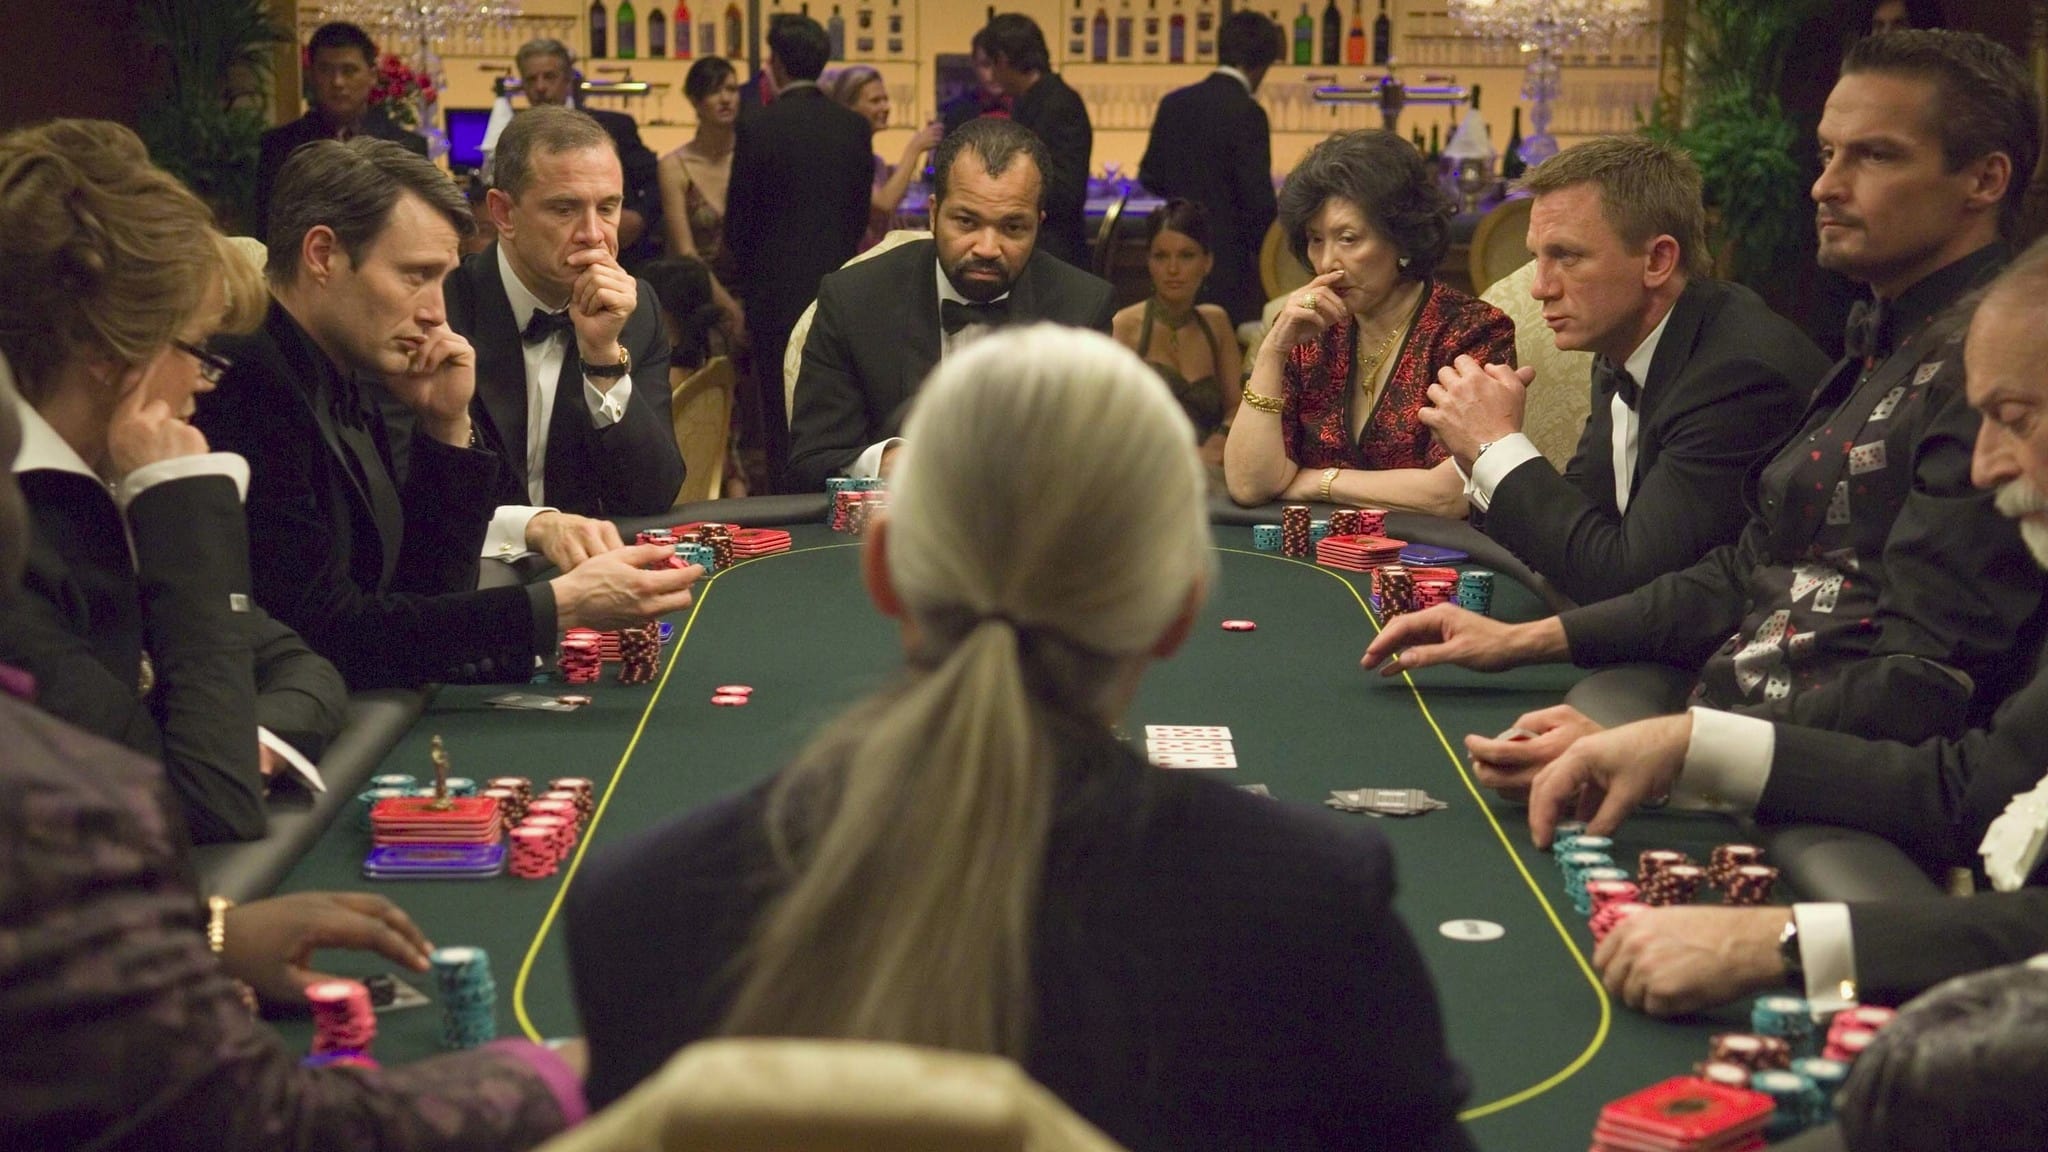 Điệp viên 007: sòng bạc hoàng gia - Casino royale